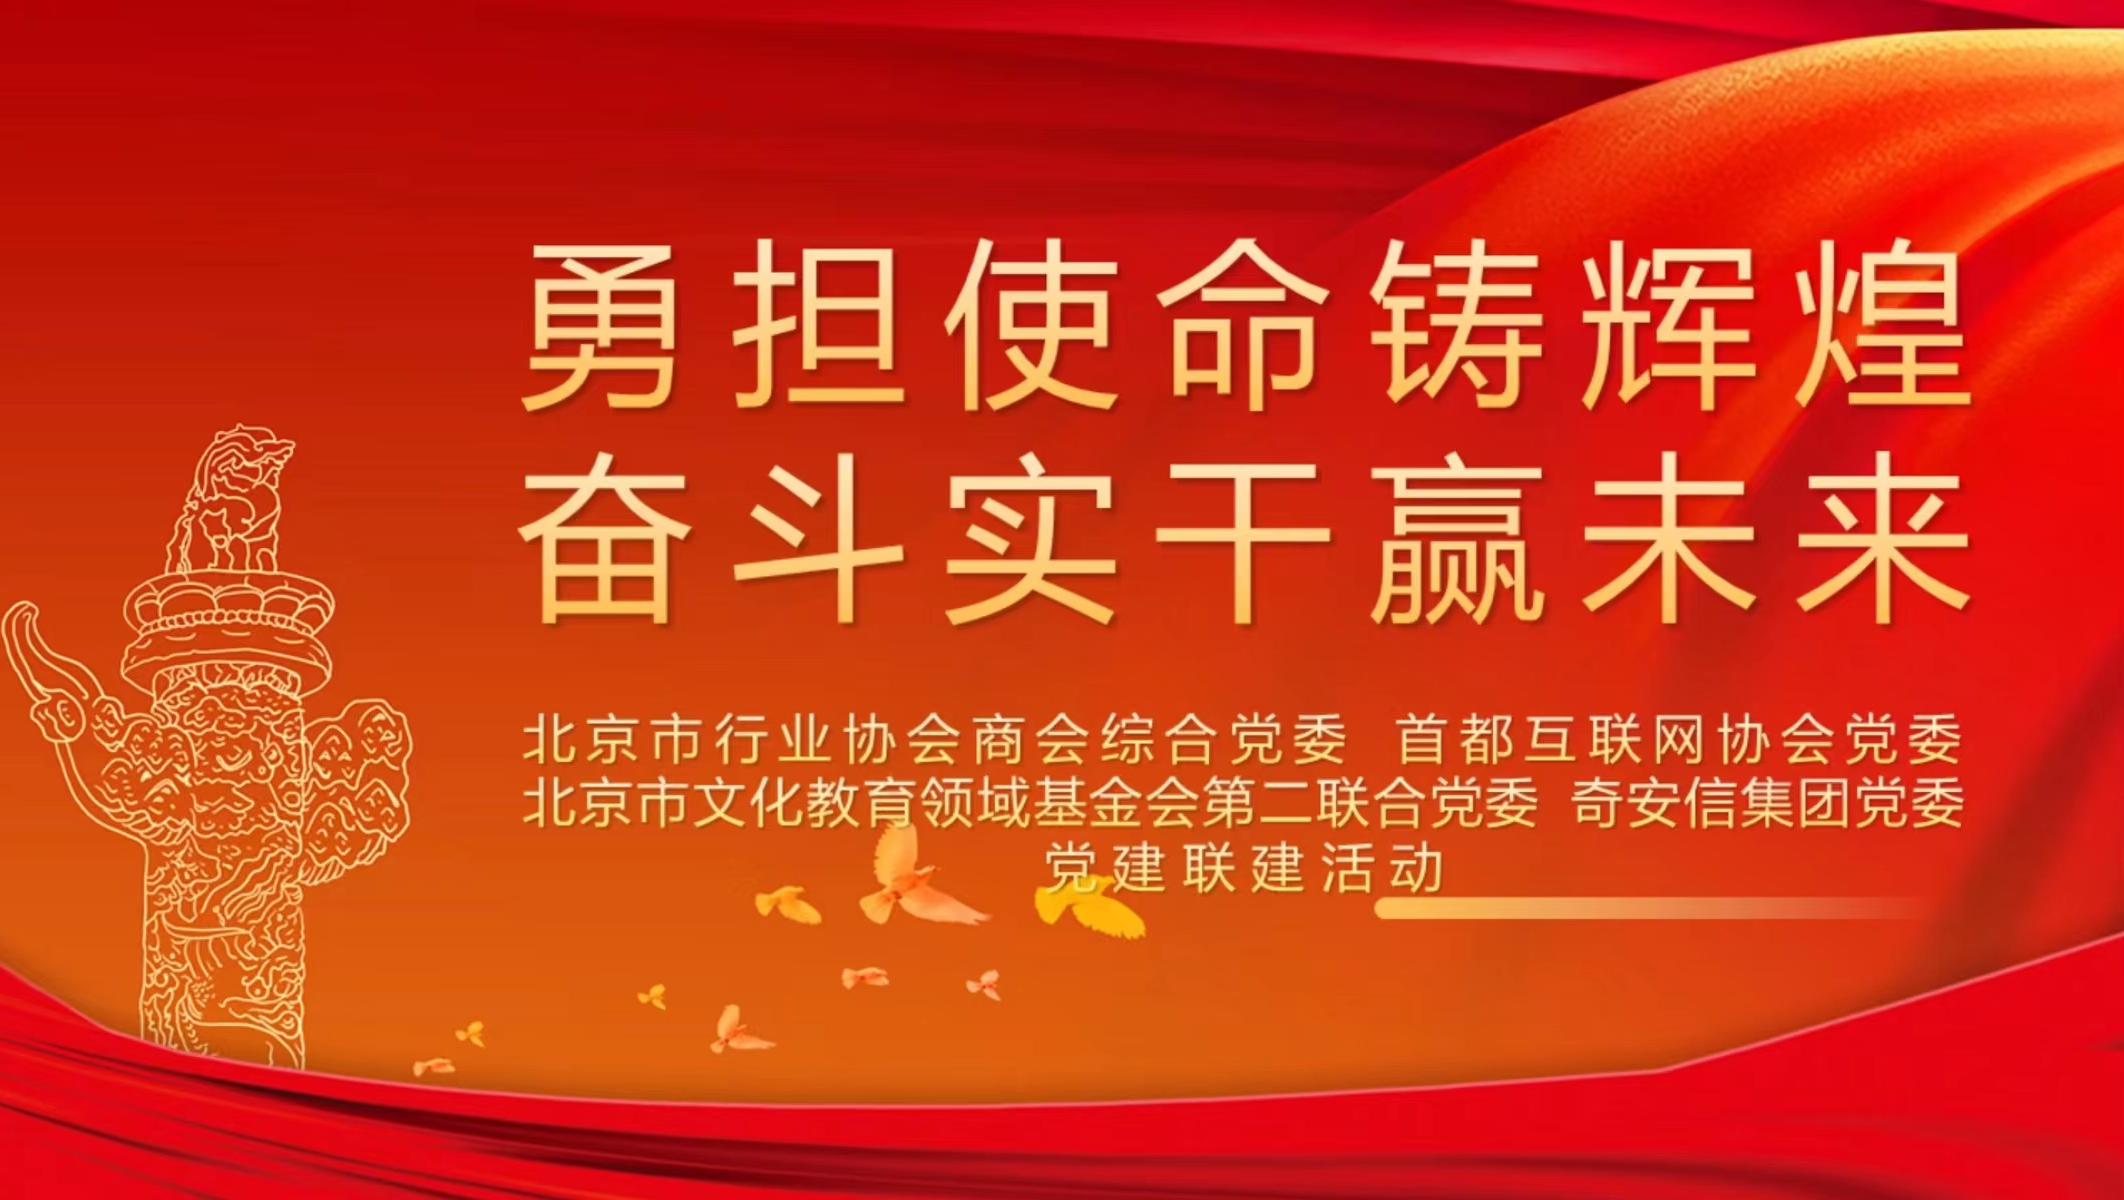 北京市快遞協會參加學習“兩會”精神線上宣講會